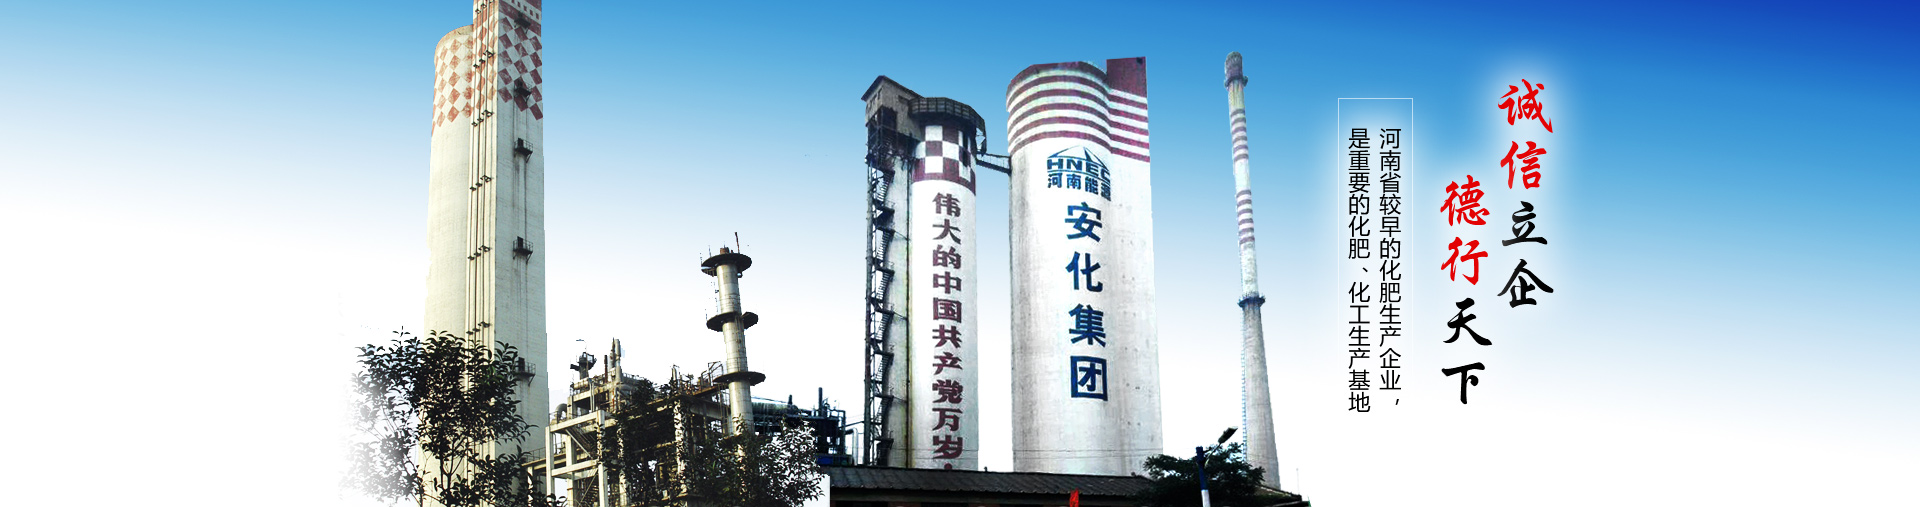 河南豫珠肥业有限责任公司